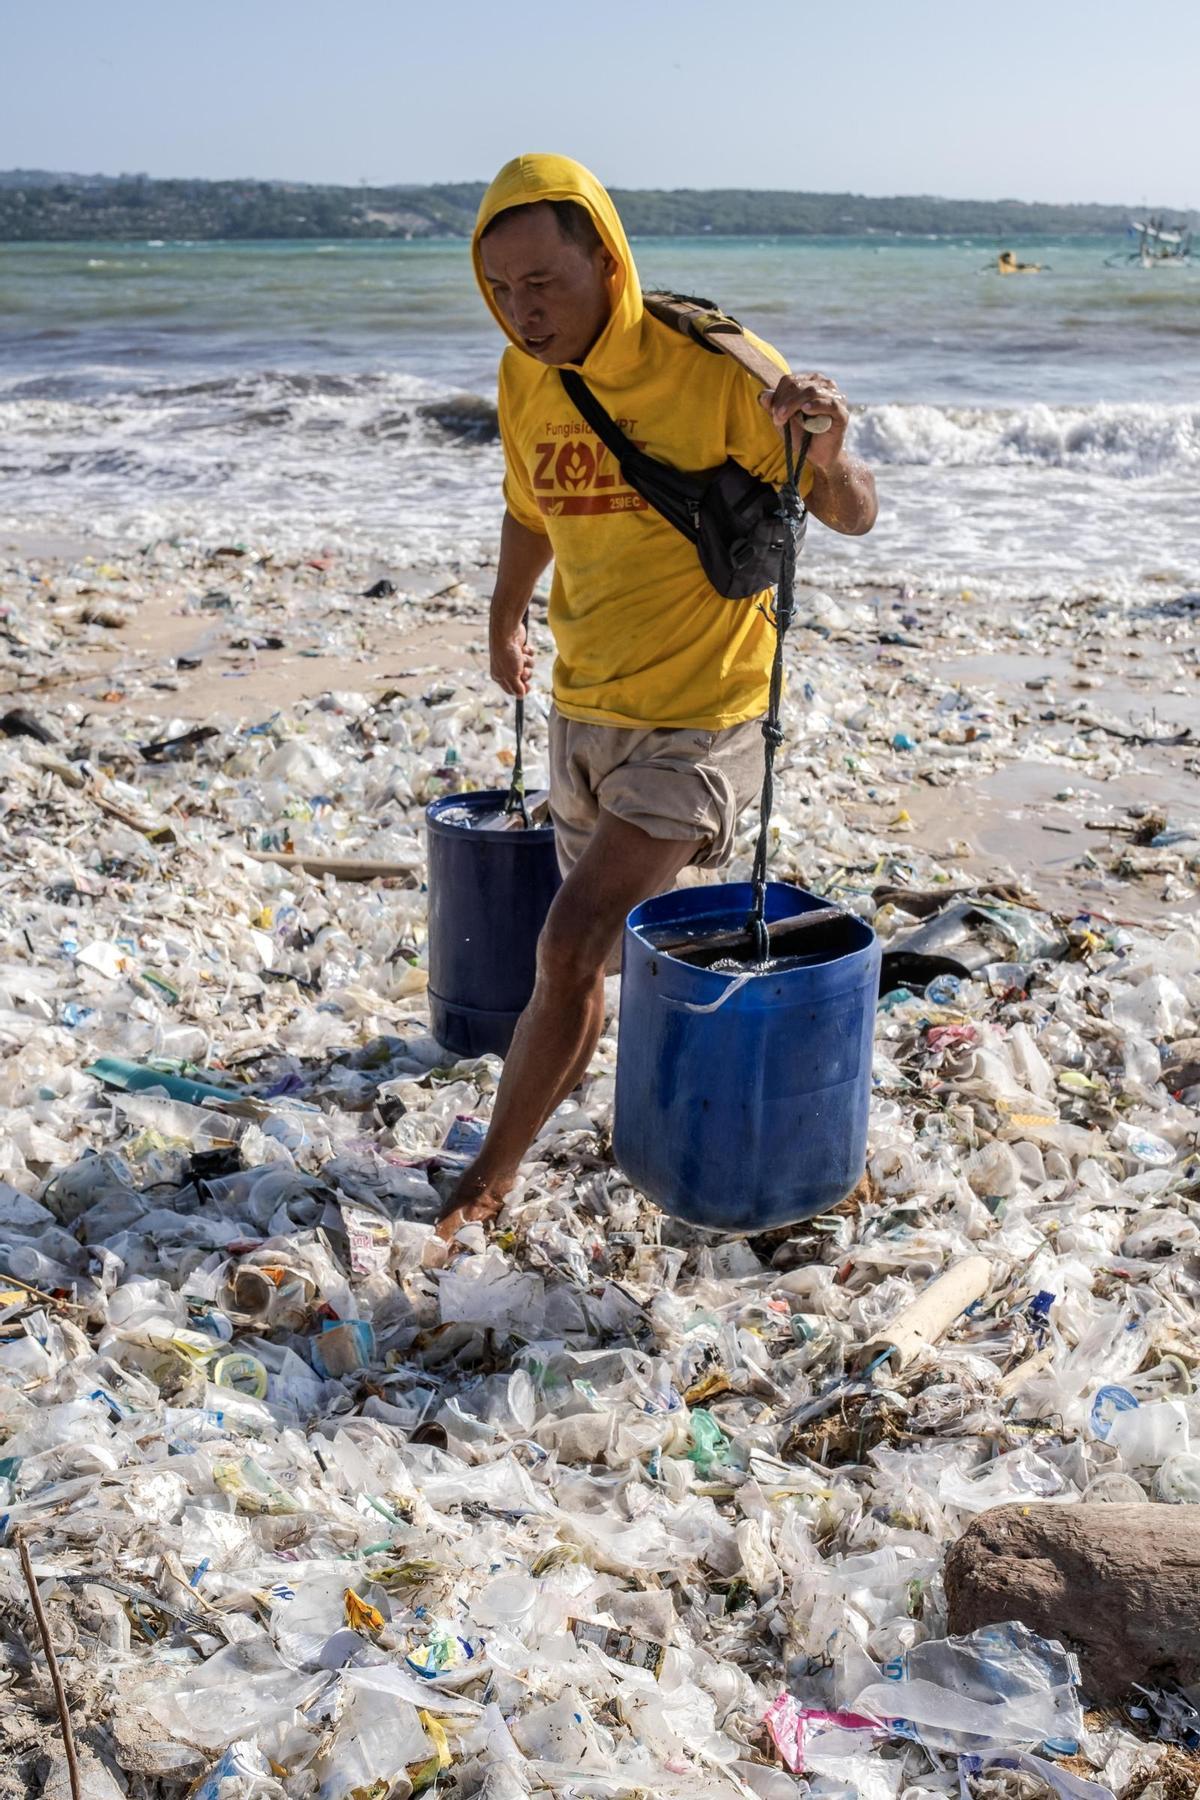 La basura se acumula en las playas de Bali tras la temporada de lluvias por la falta de gestión de residuos